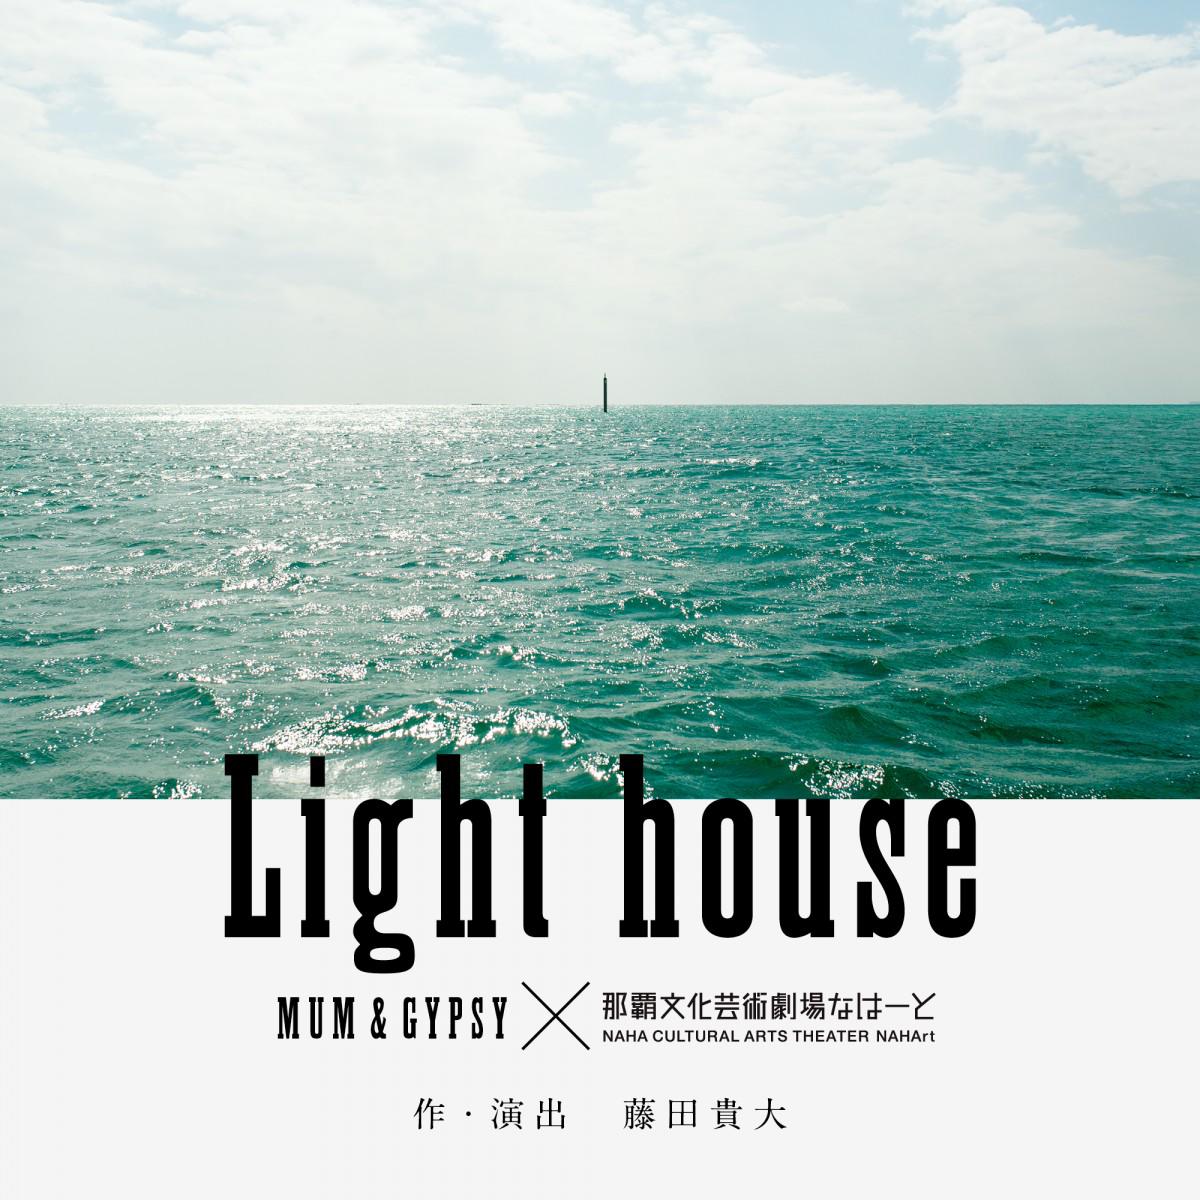 Lighthouse_211029_a.jpg